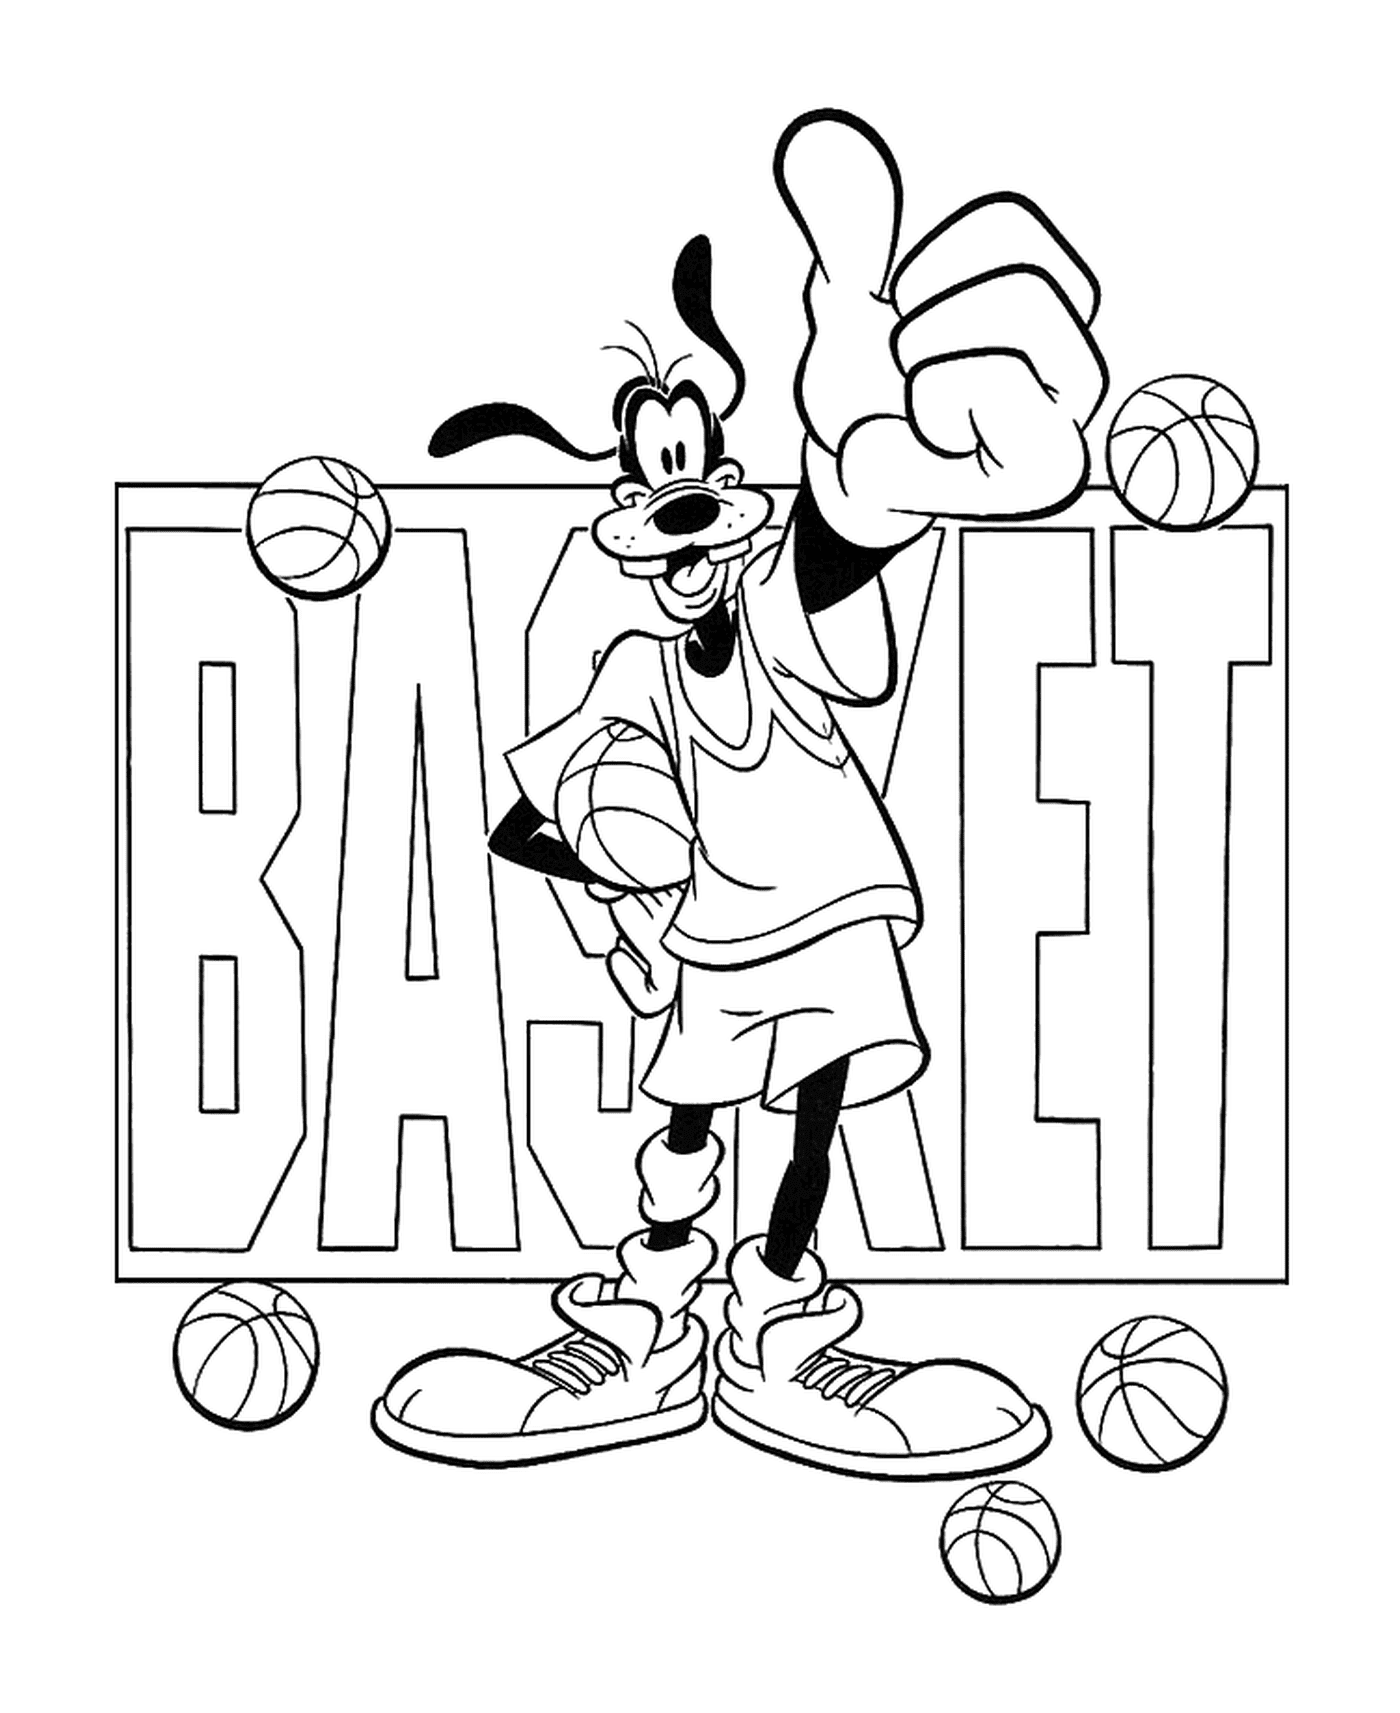  Dingo ama el baloncesto 